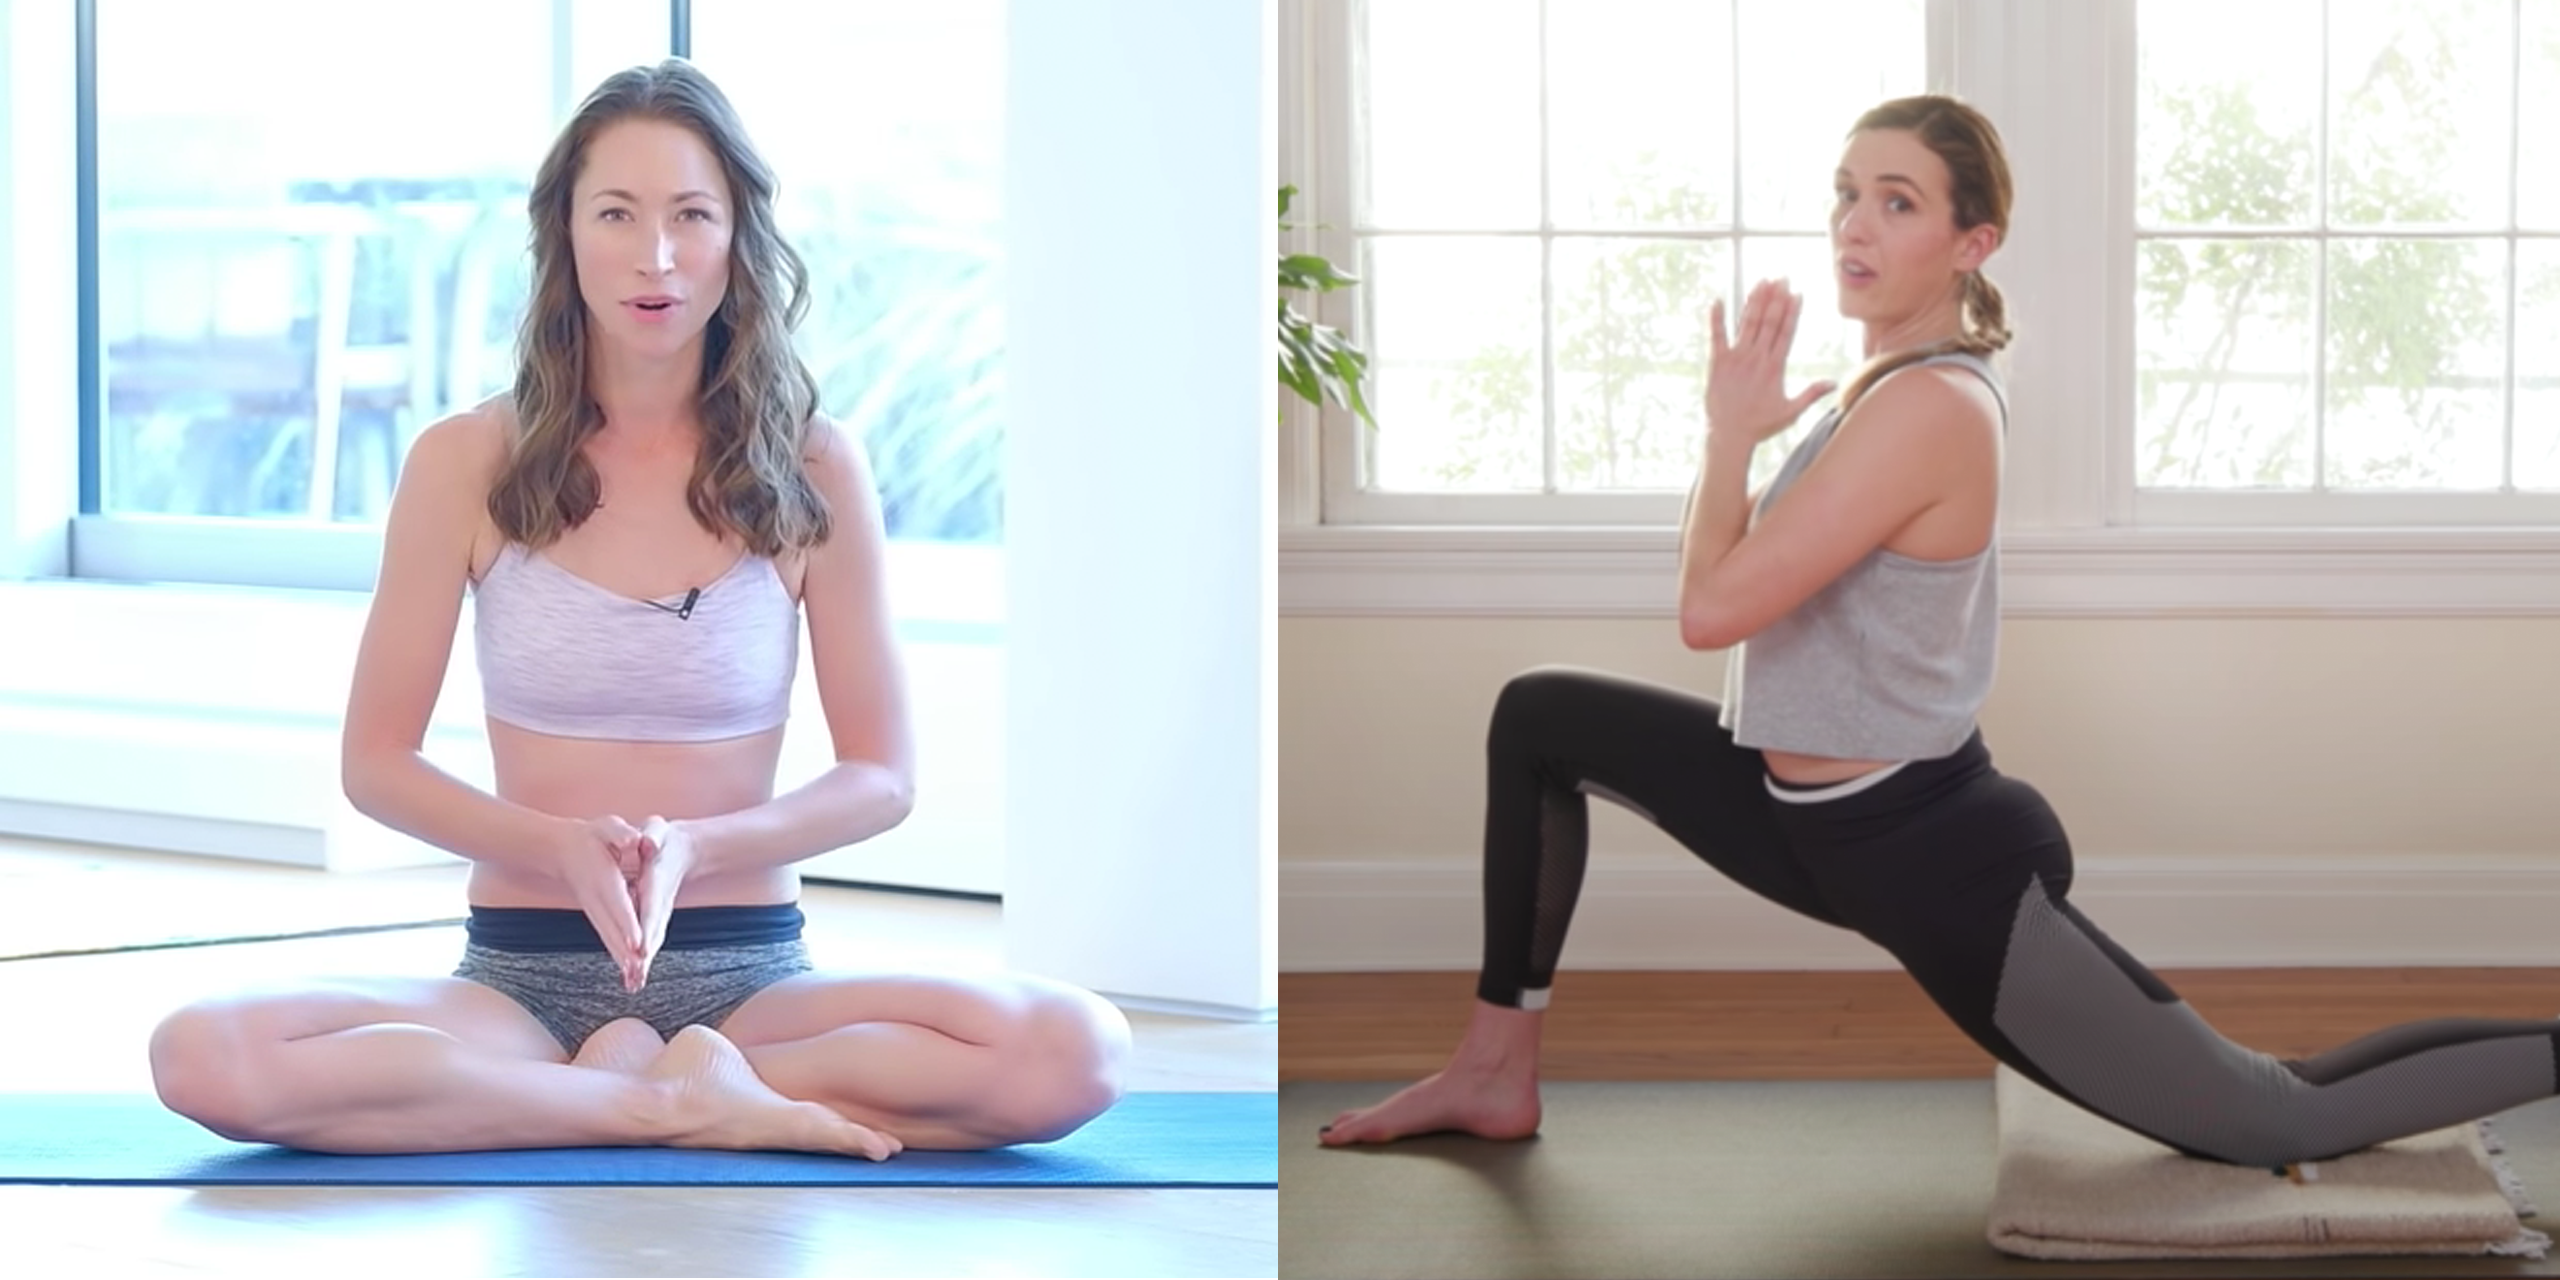 casey osteen share free sexy yoga videos photos